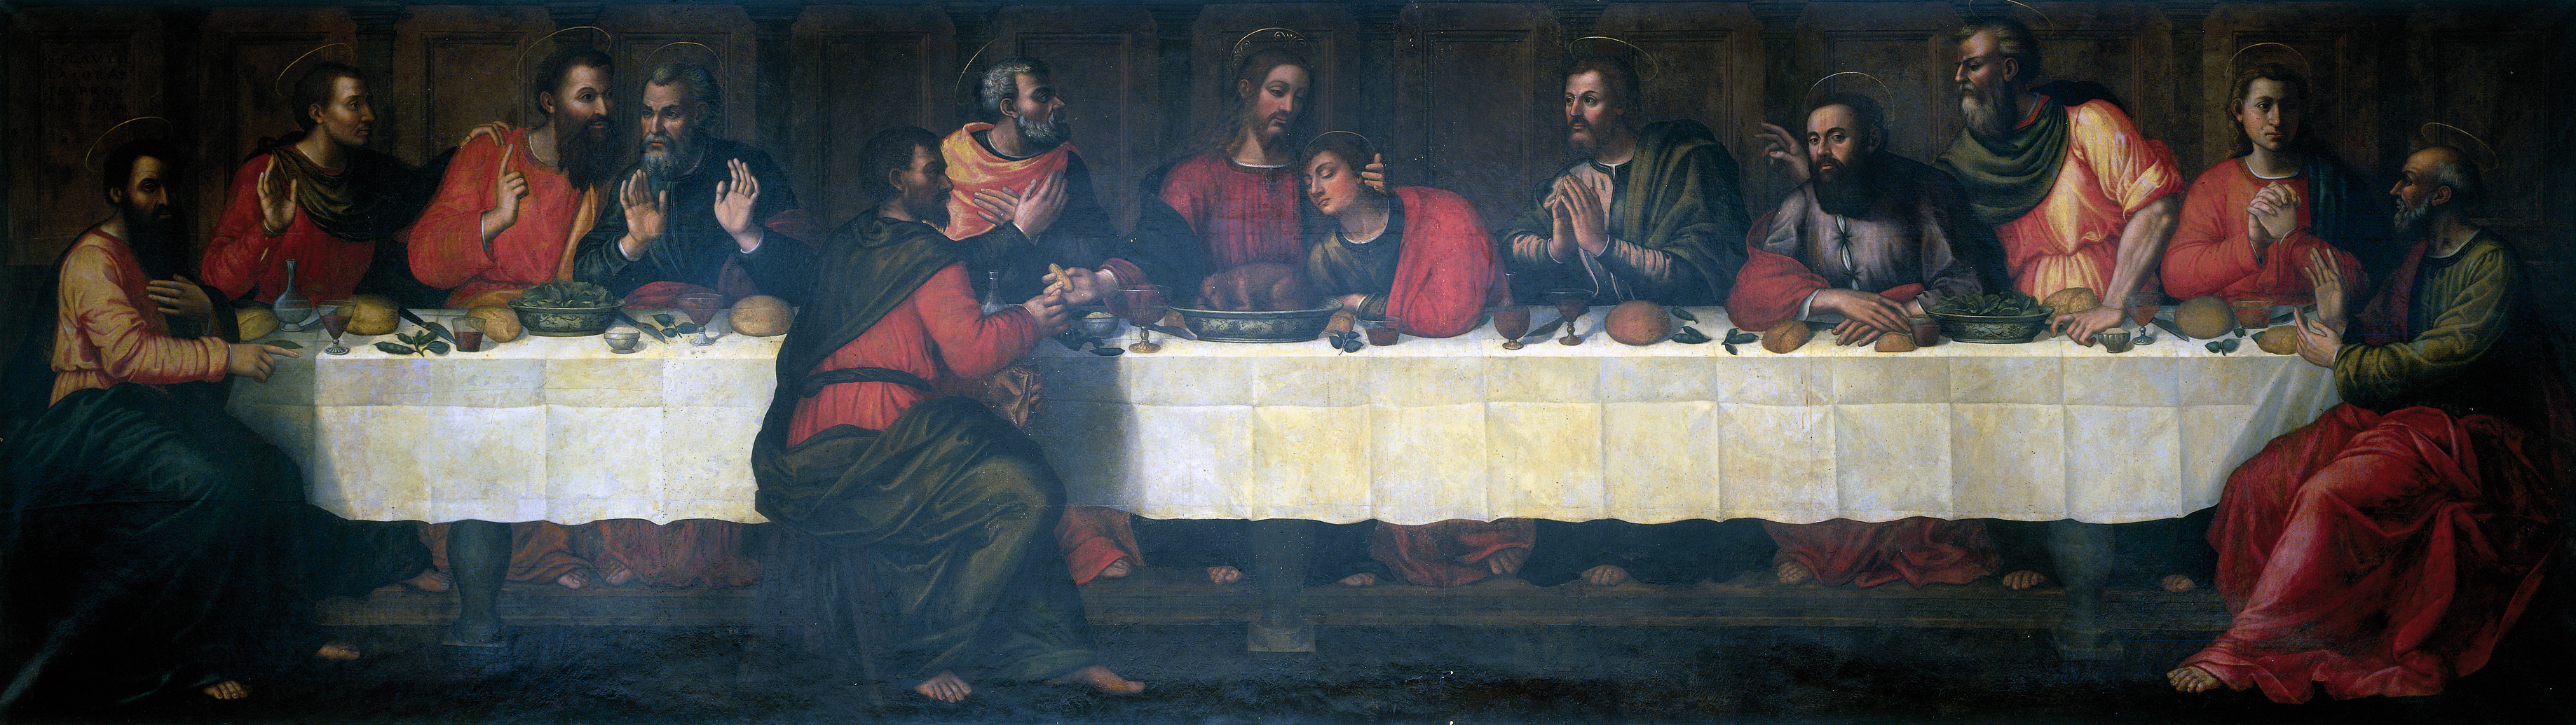 Utolsó vacsora by Plautilla Nelli - 16. század 